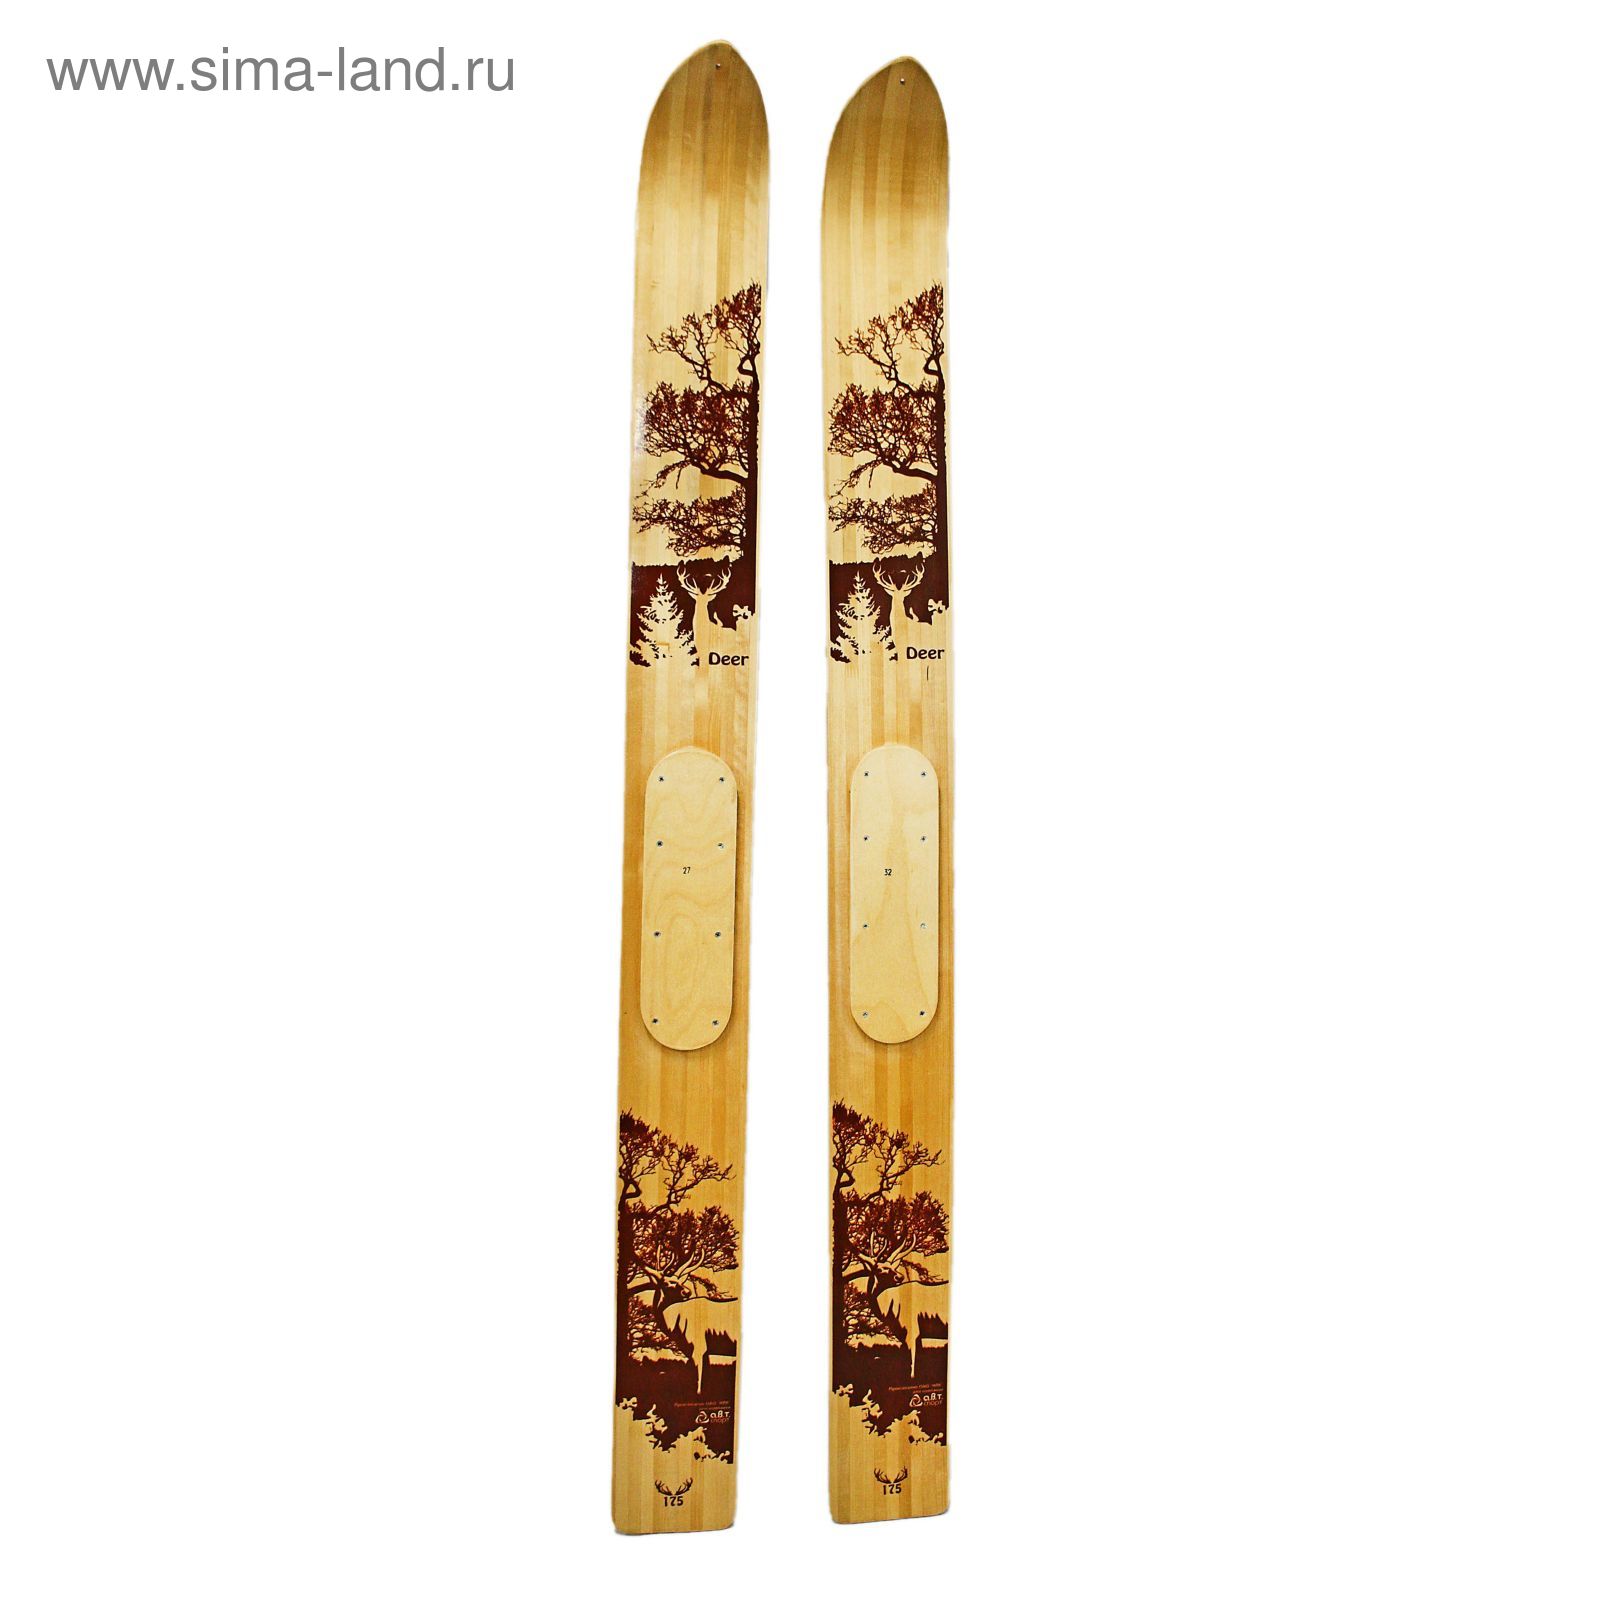 Лыжи промысловые "Deer", деревянные (145 см)